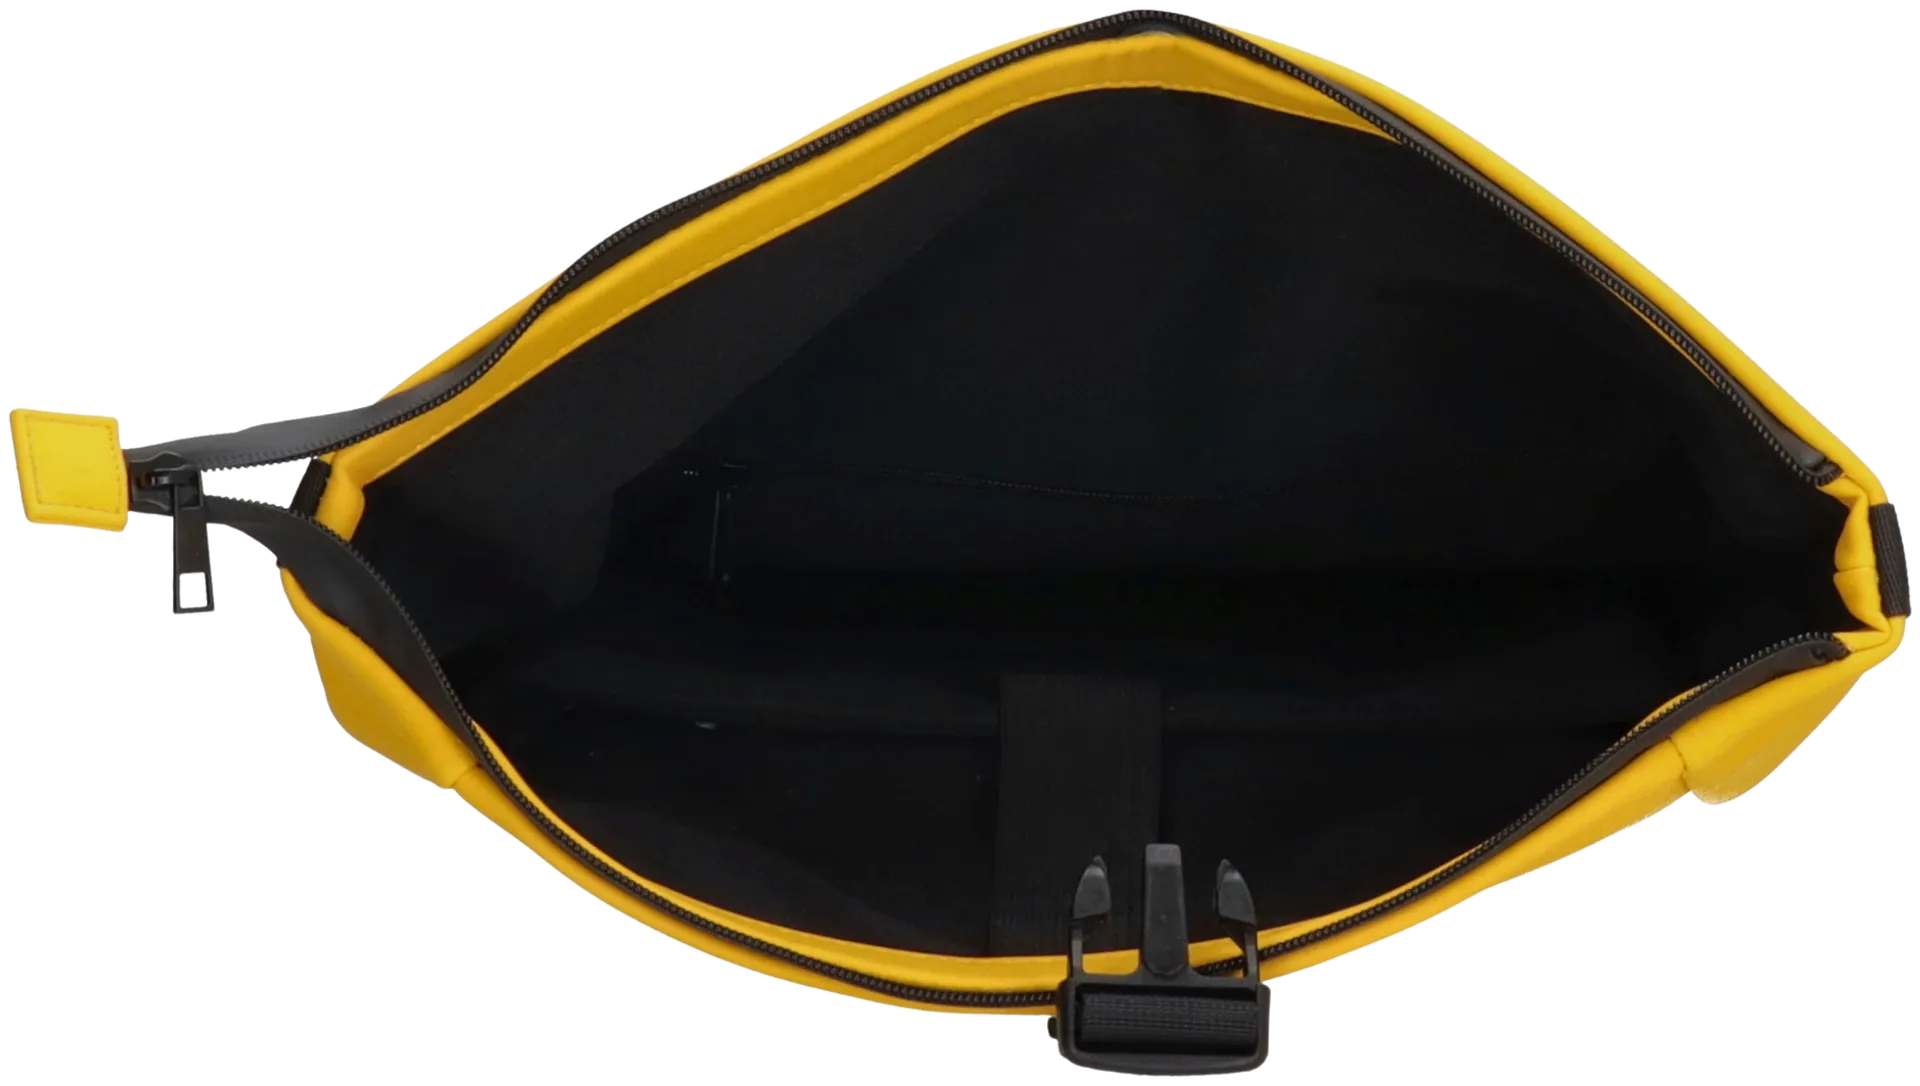 waterproof backpack - 4